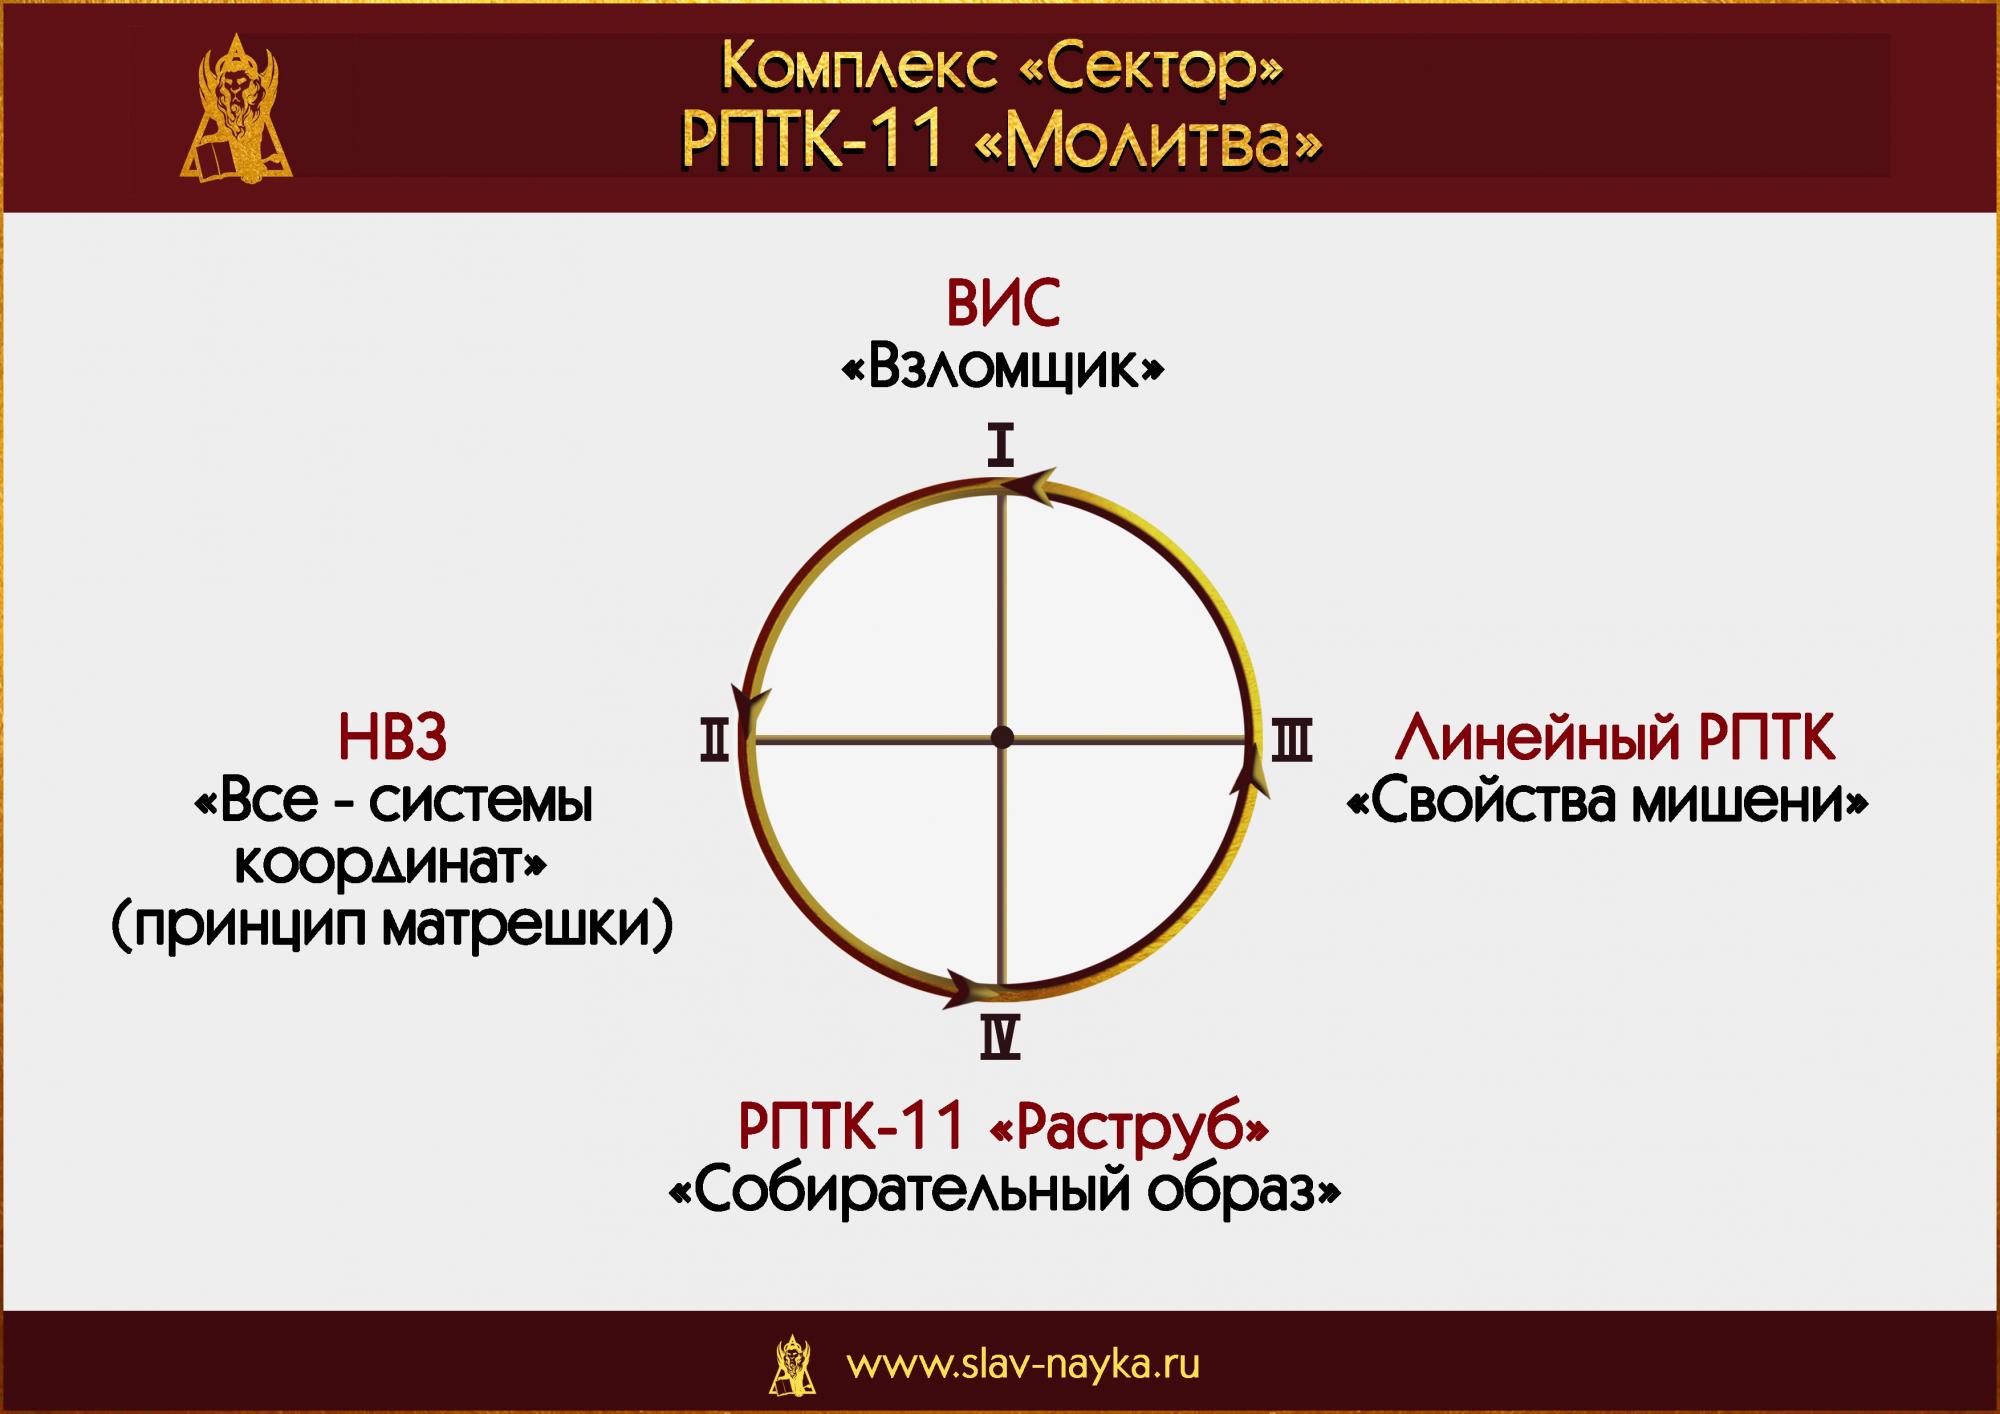 РПТК-11 "Молитва" Комплекс "Сектор". Прикладная наука